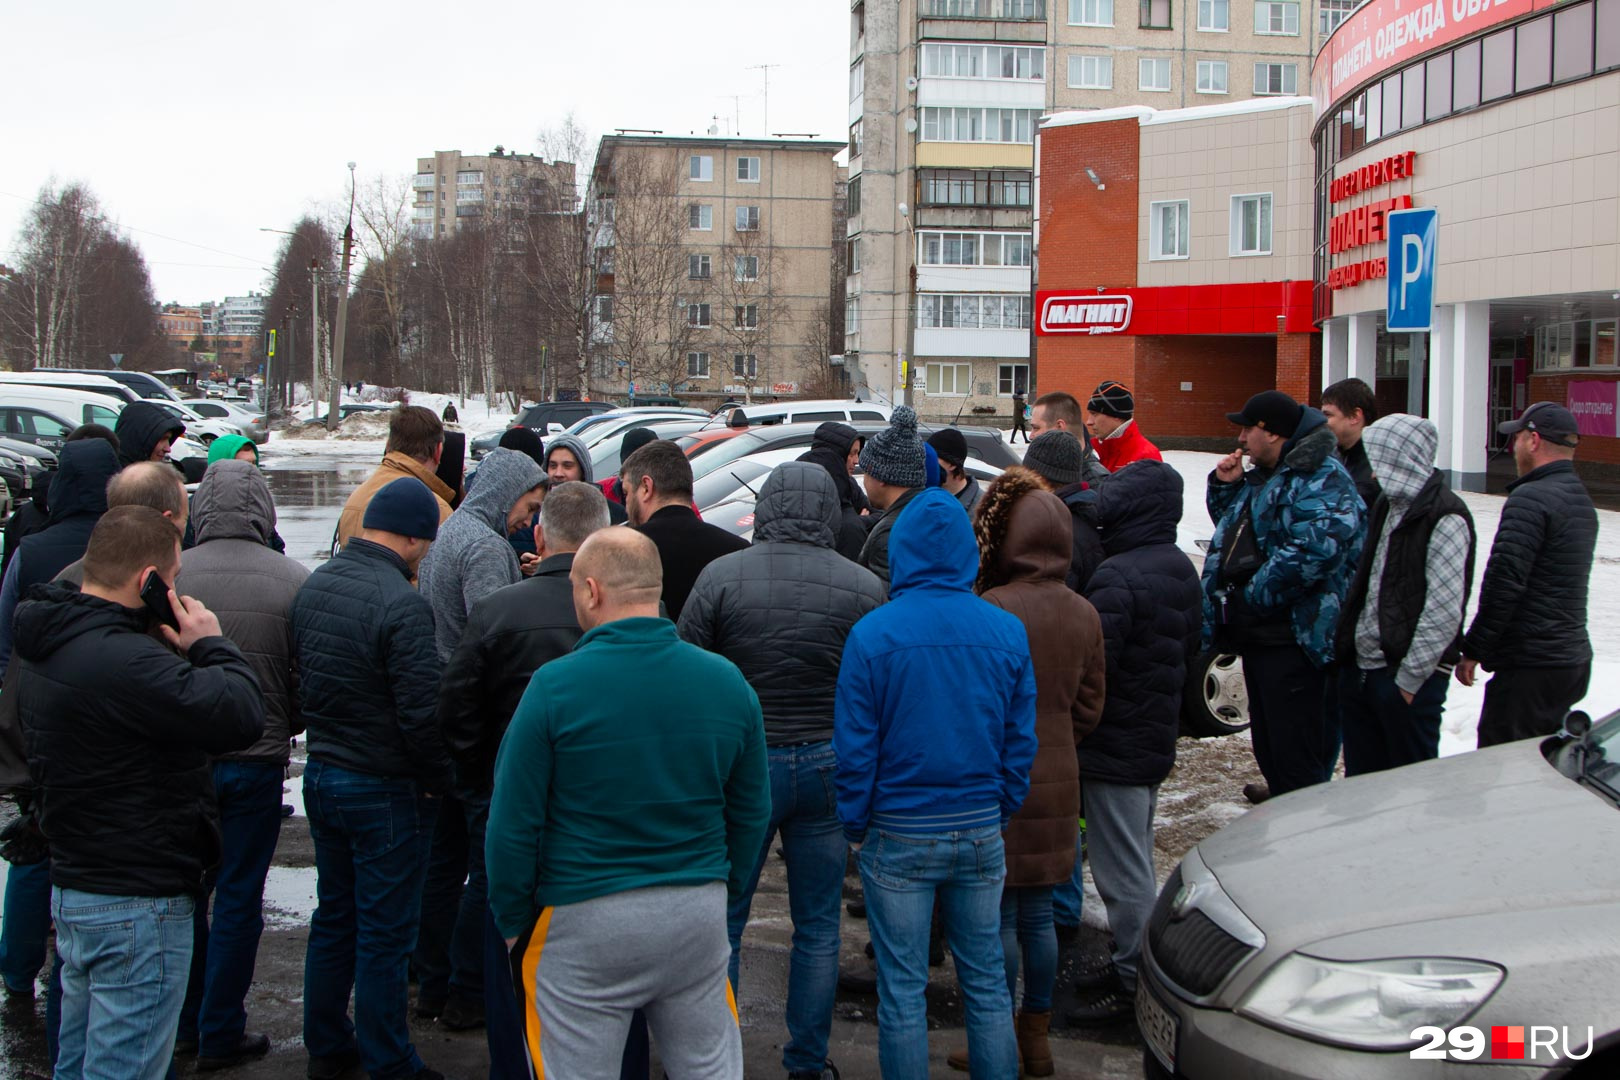 Водители намерены бастовать, пока «Яндекс» не пойдет на уступки